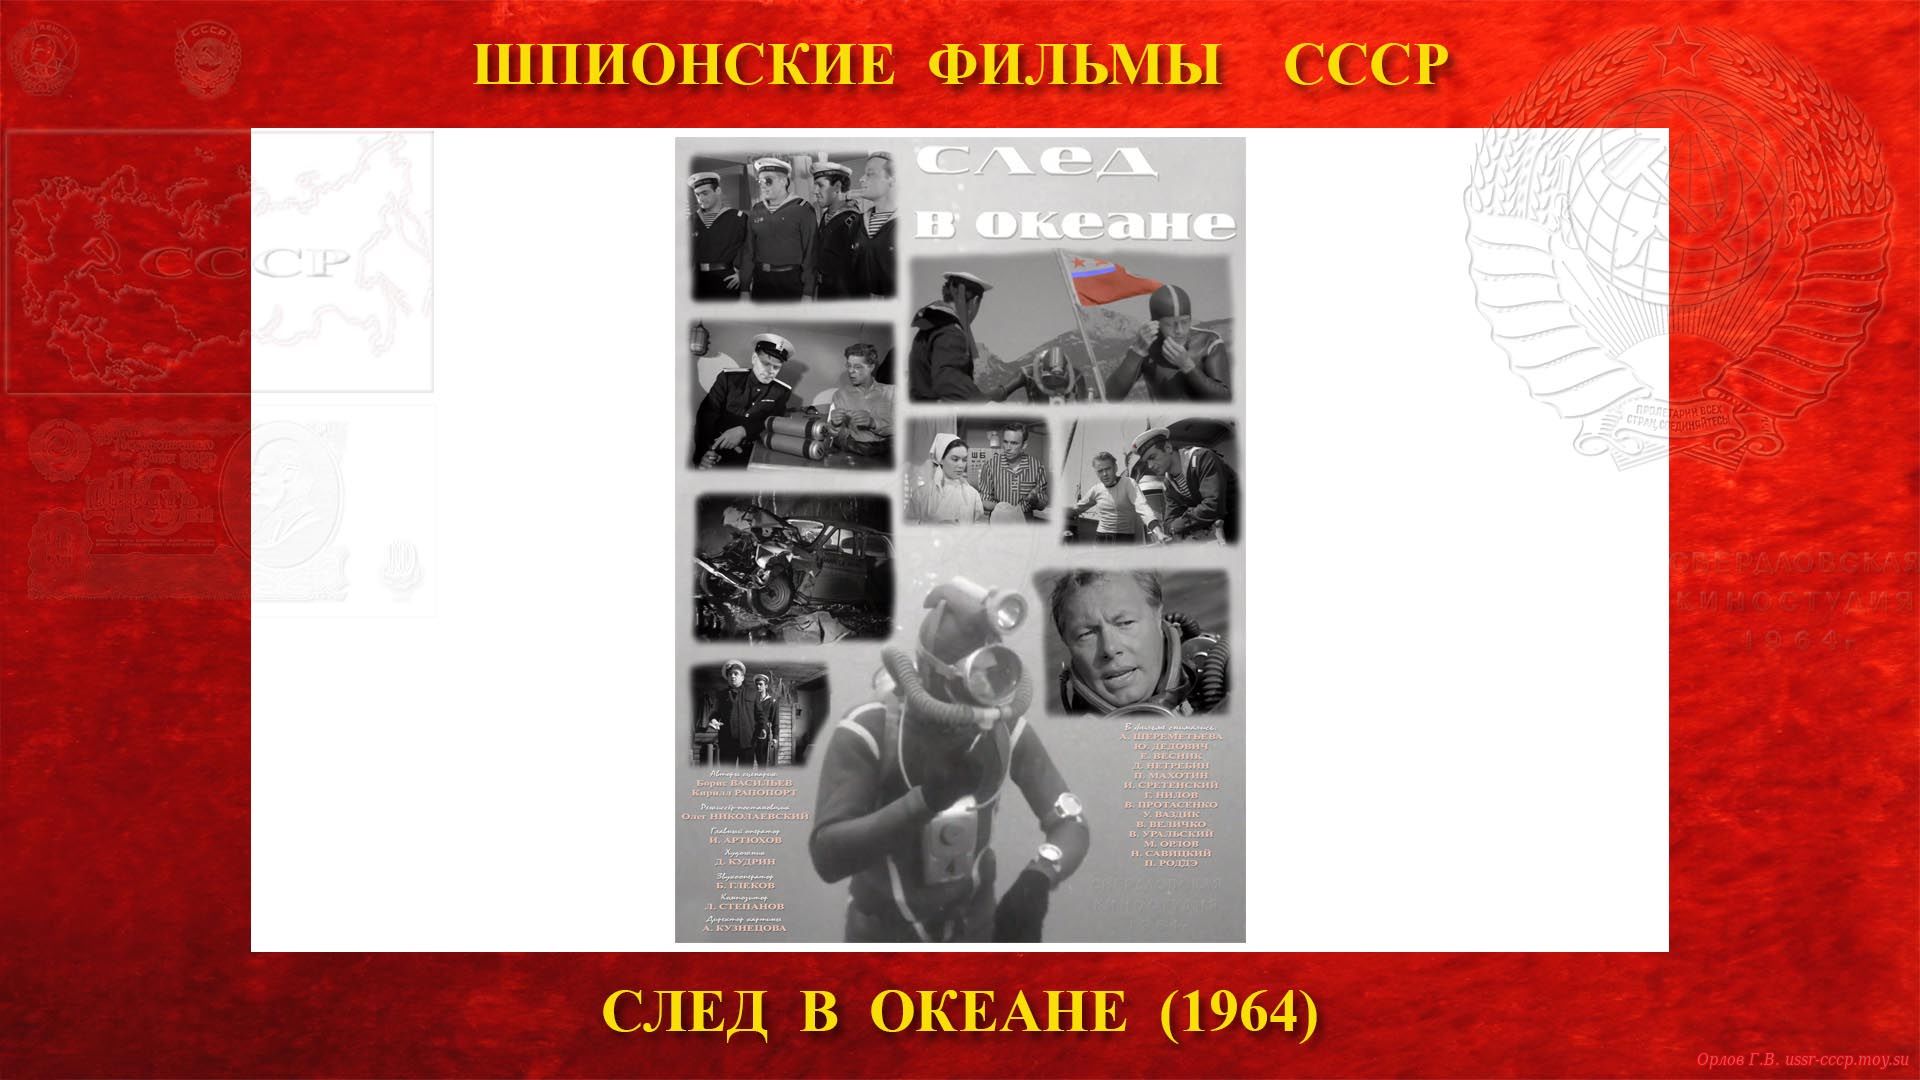 СЛЕД В ОКЕАНЕ — Шпионский — Свердловская киностудия (1964)